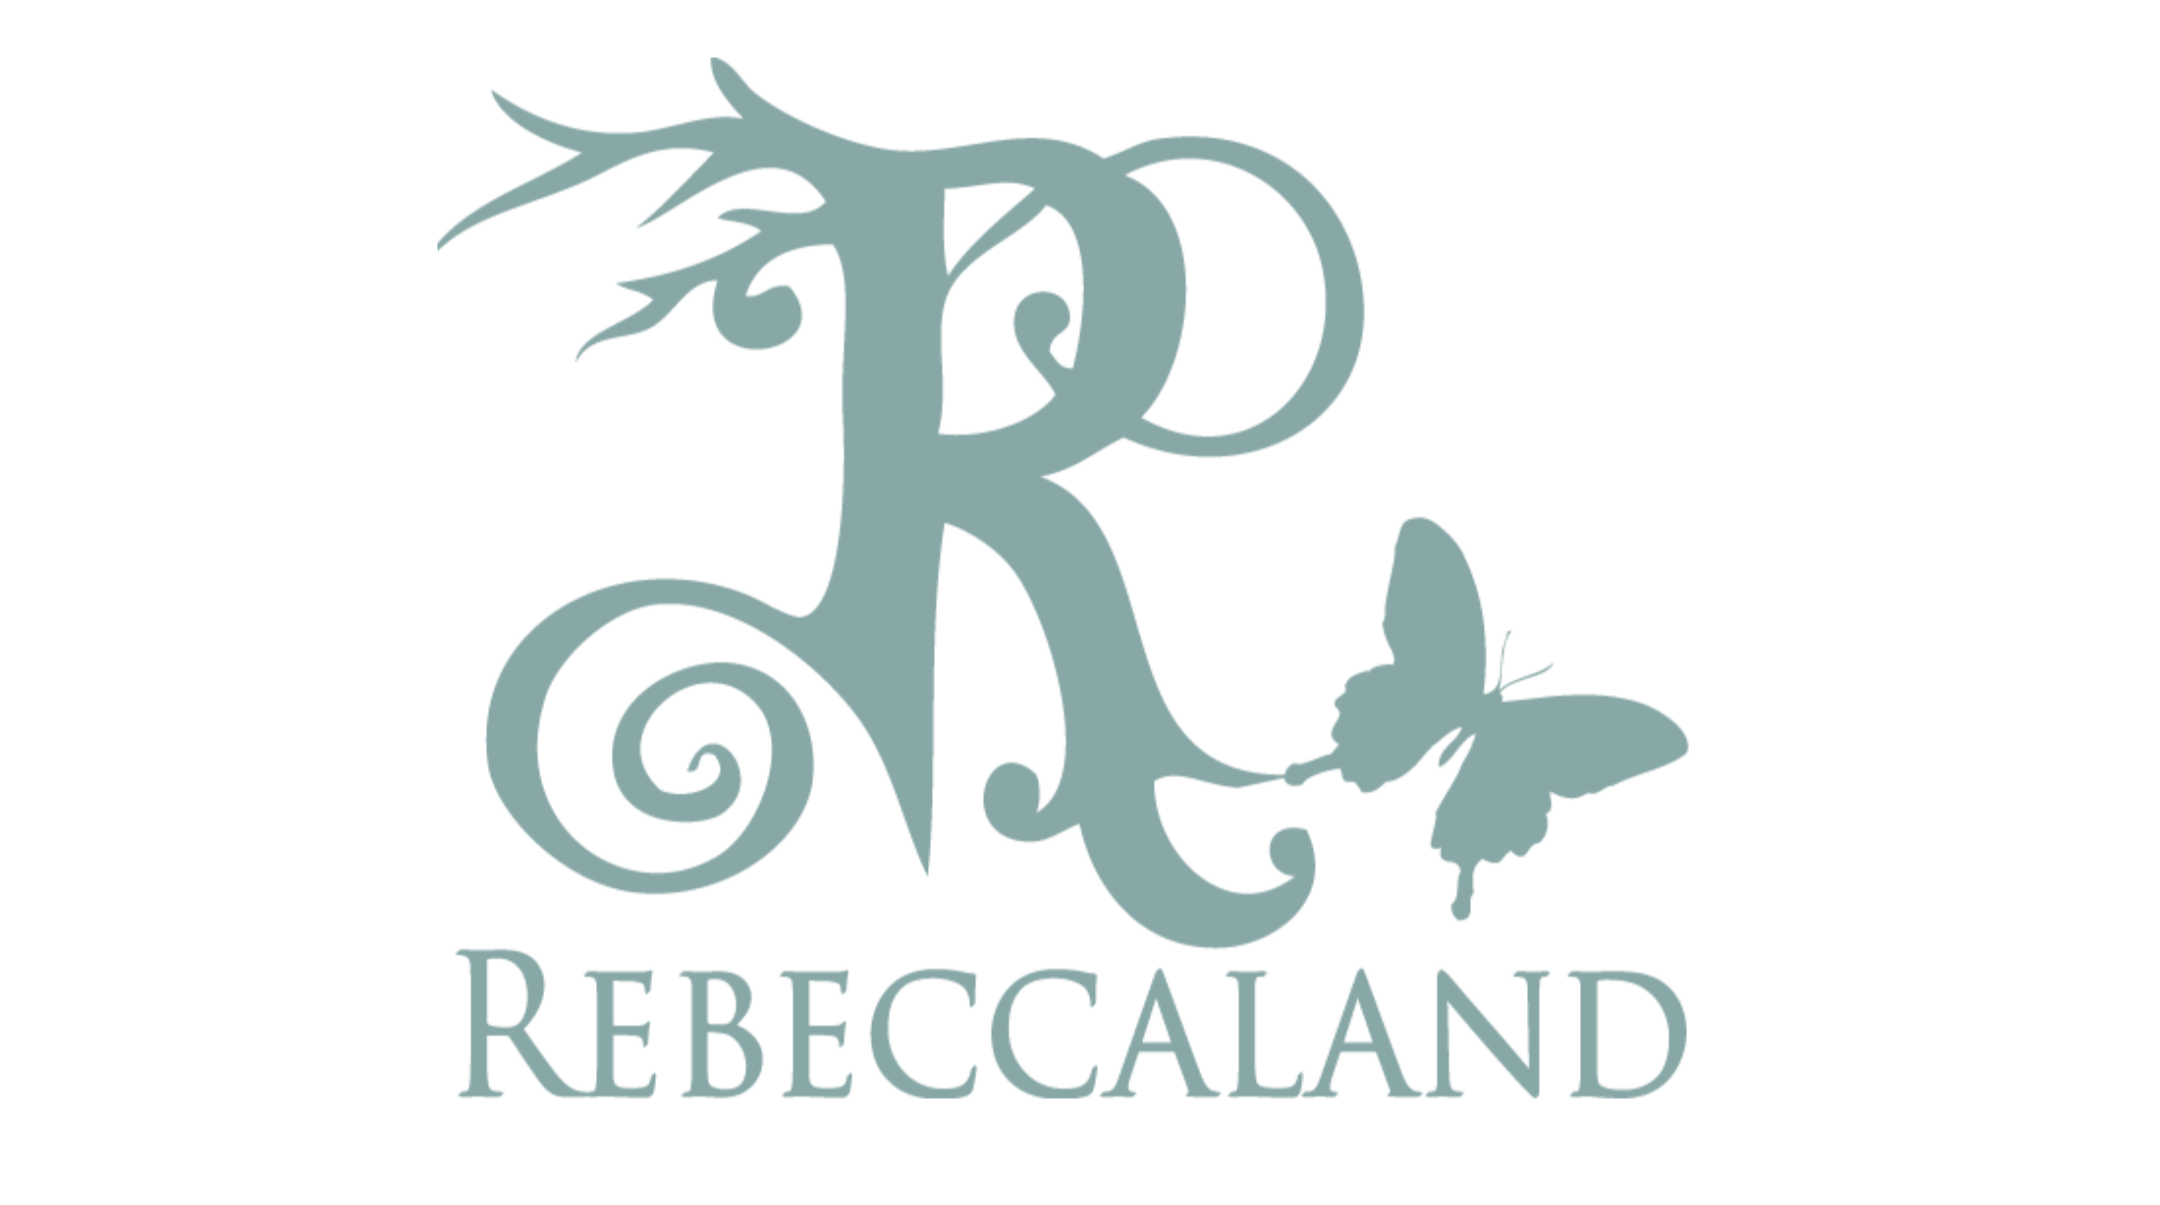 Rebeccaland